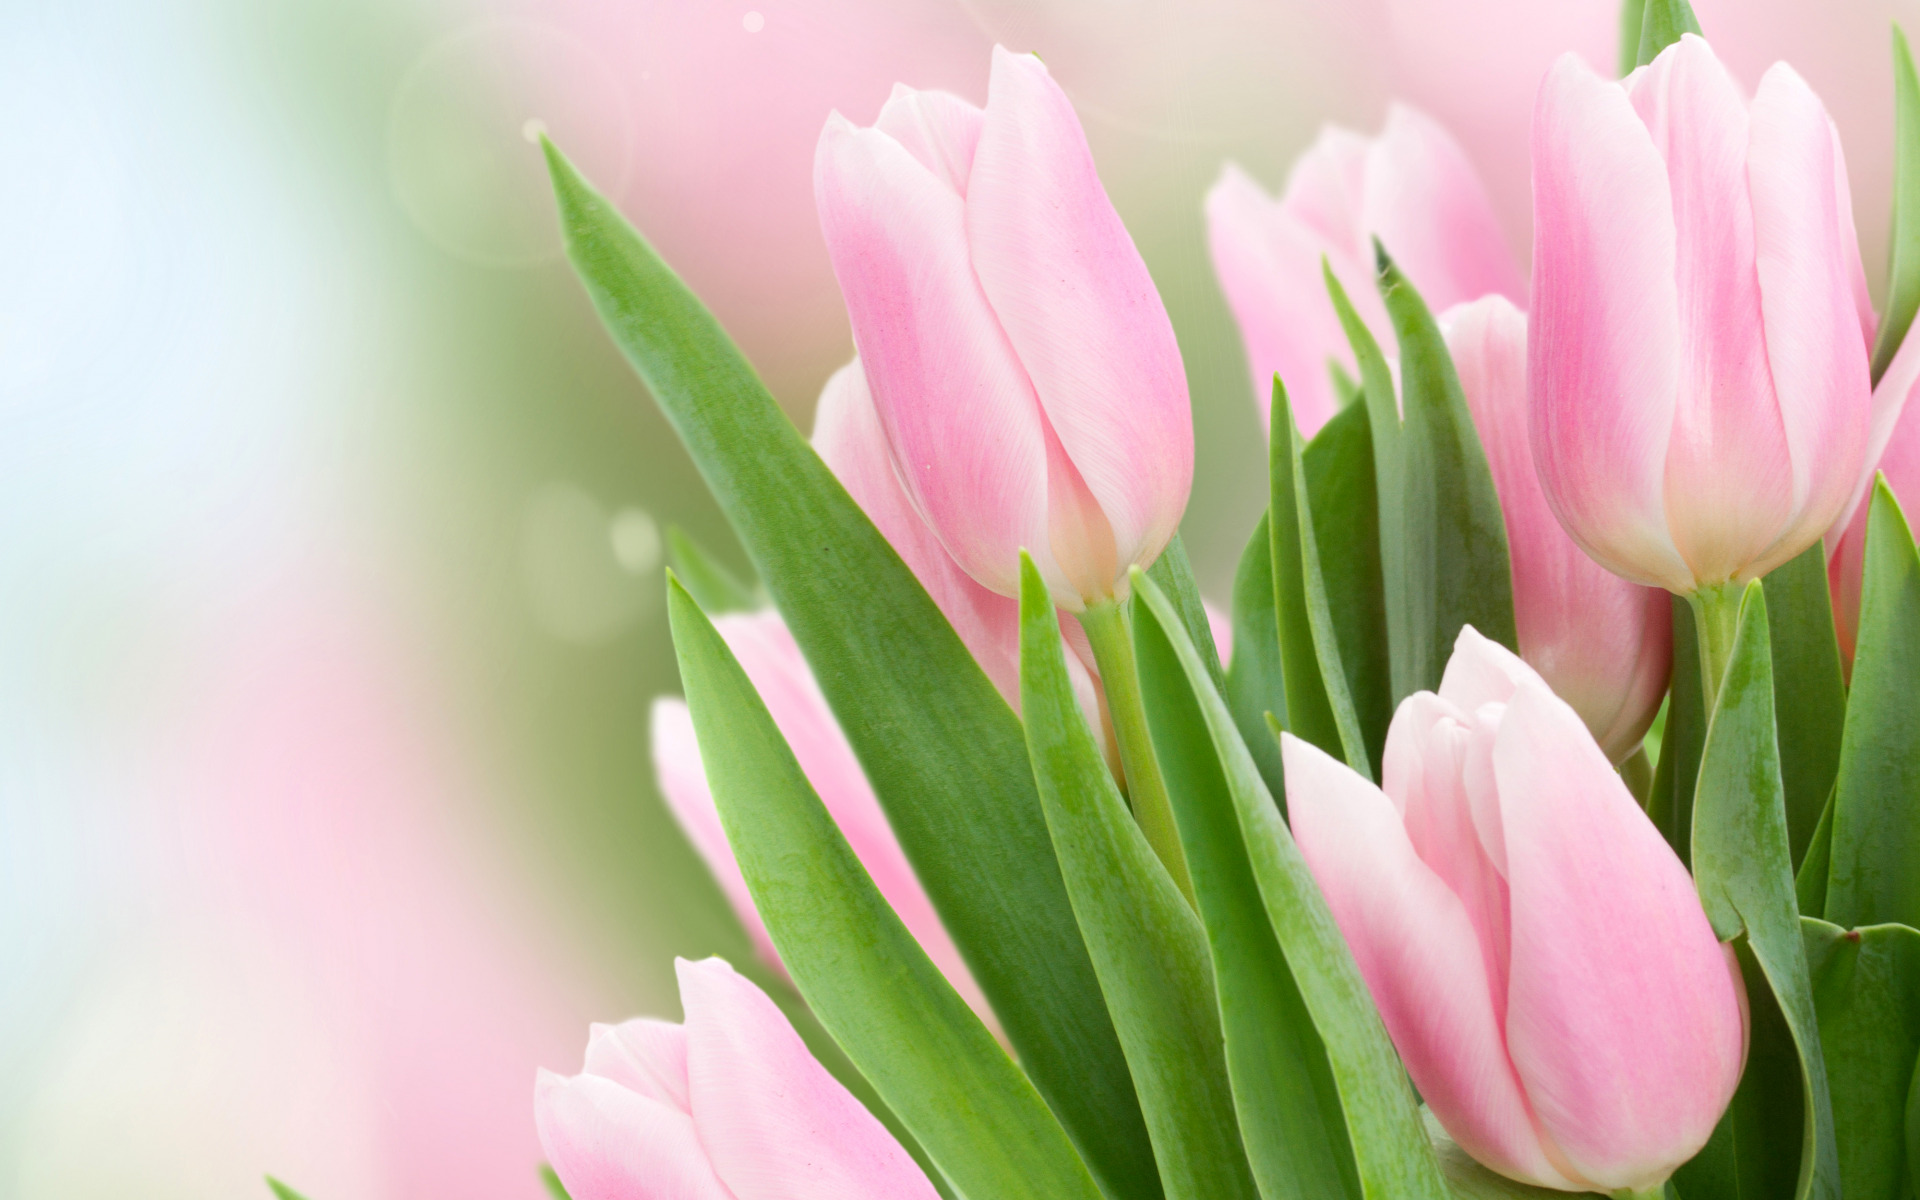 leaves , glare , background , tulips , pink , buds , bokeh , closeup ,листья, блики, фон, тюльпаны, розовые, бутоны, боке, крупным планом,